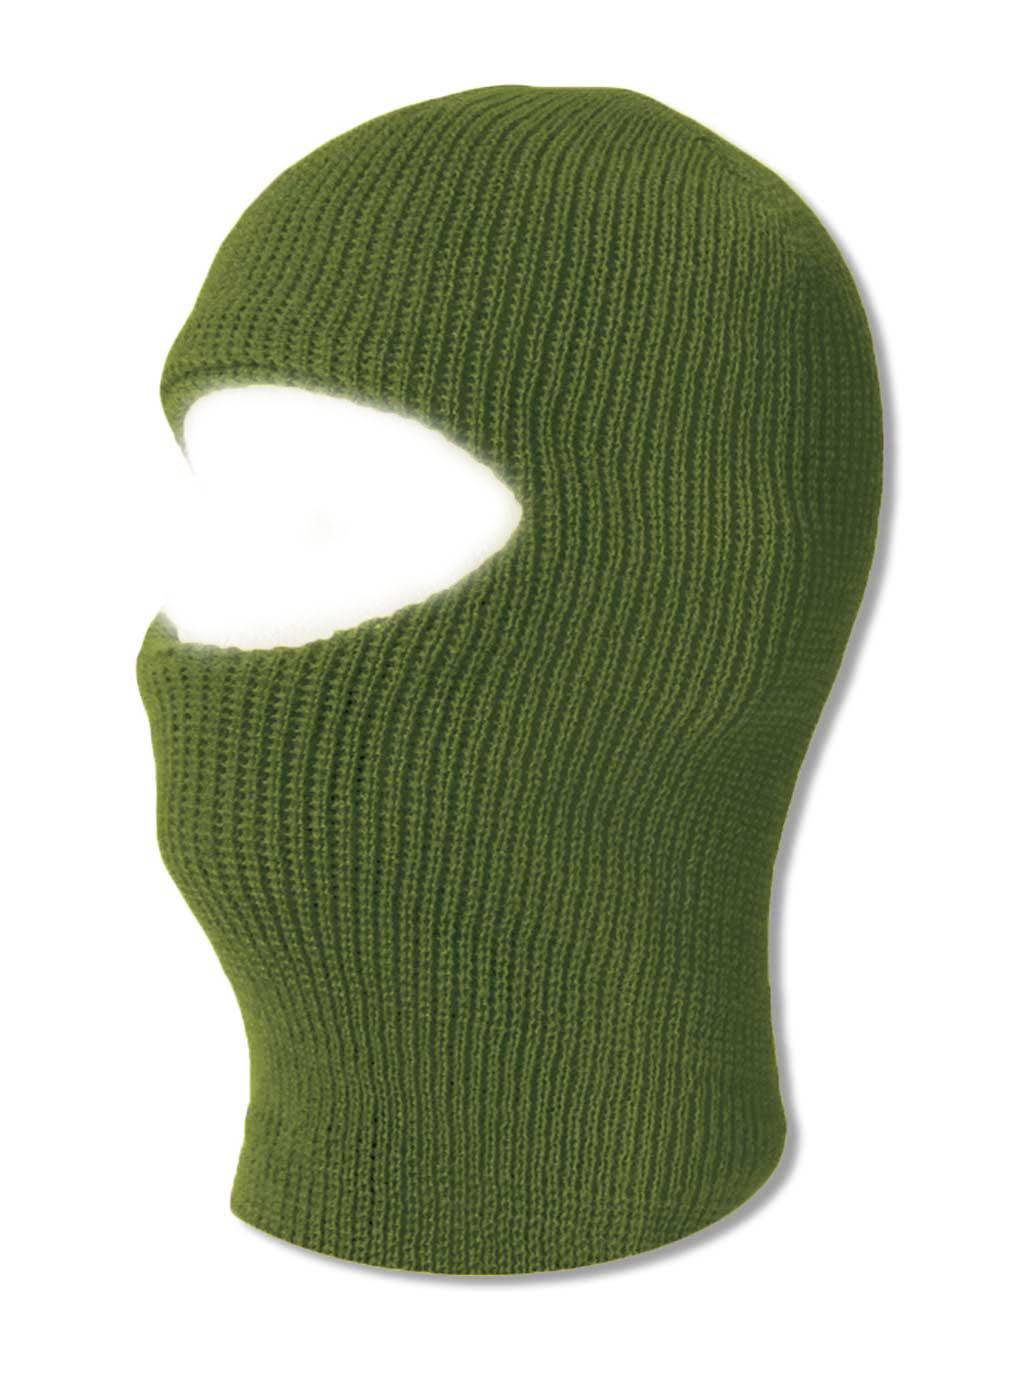 TopHeadwear One 1 Hole Ski Mask - Olive - image 1 of 1